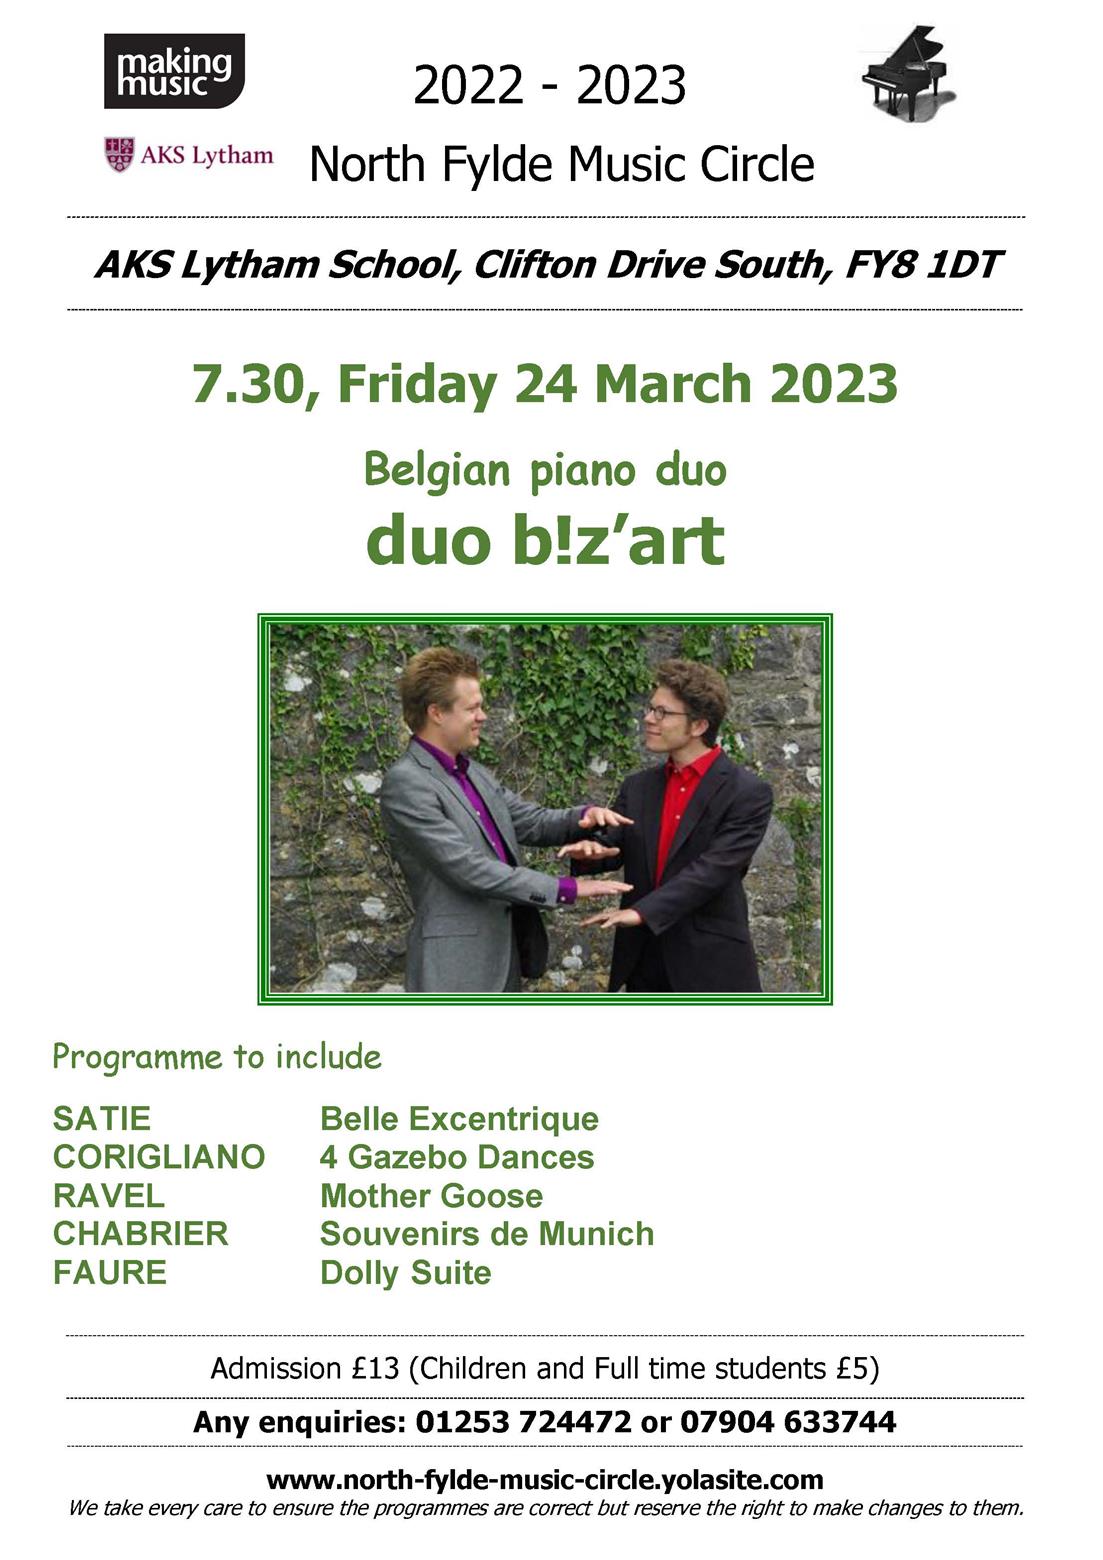 North Fylde Music Circle - Belgian piano duo - Duo B!z'art